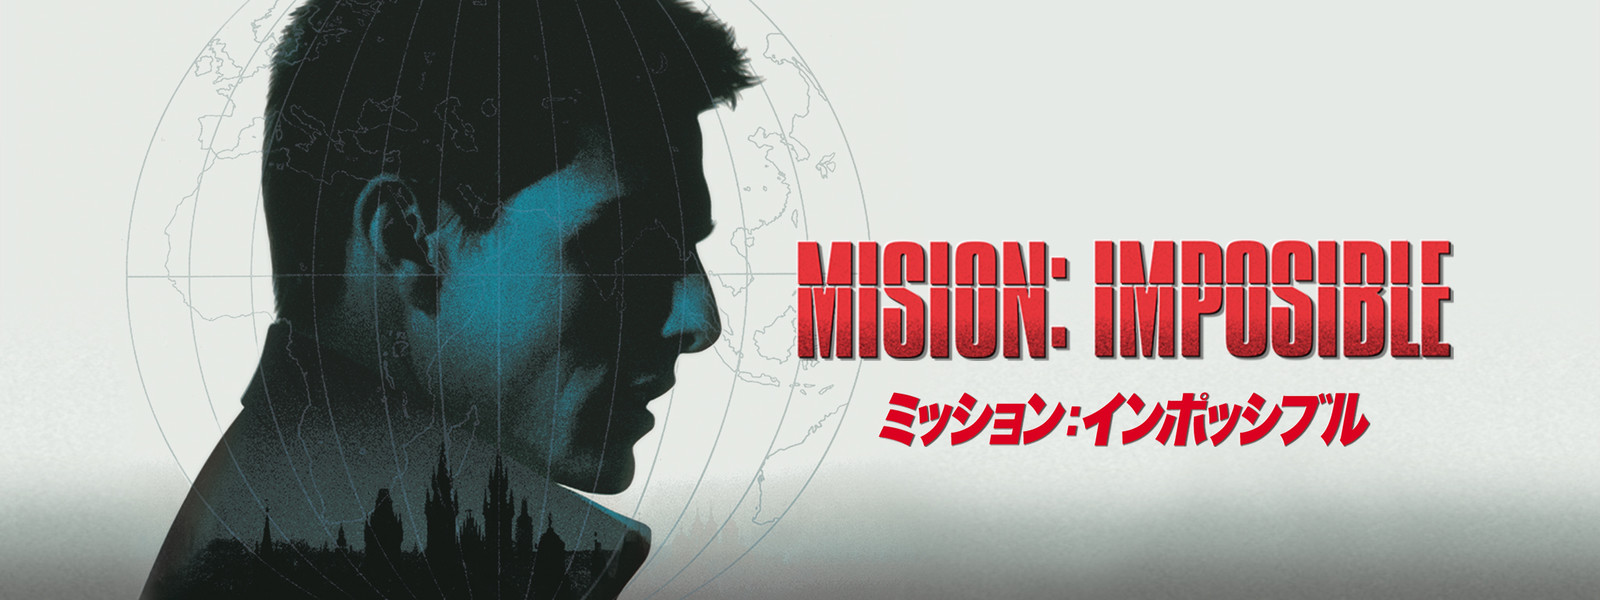 映画『ミッション:インポッシブル』シリーズの見逃し動画を配信しているサブスクをコスパで比較